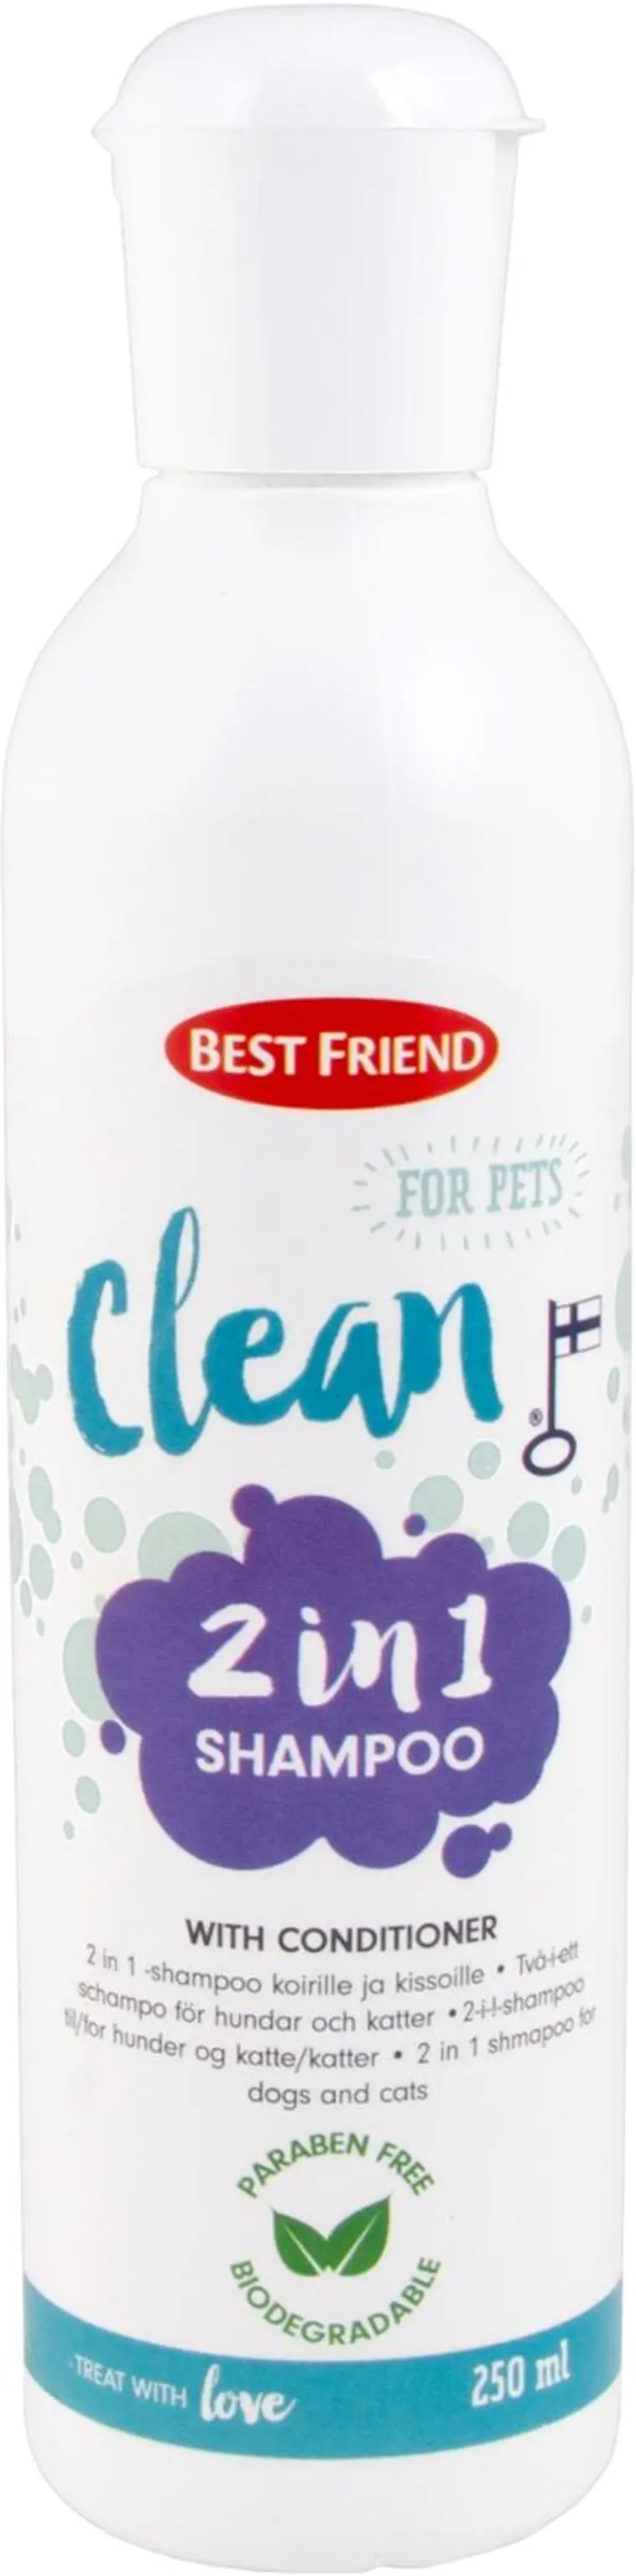 Best Friend Clean Lemmikin 2in1 shampoo 250 ml